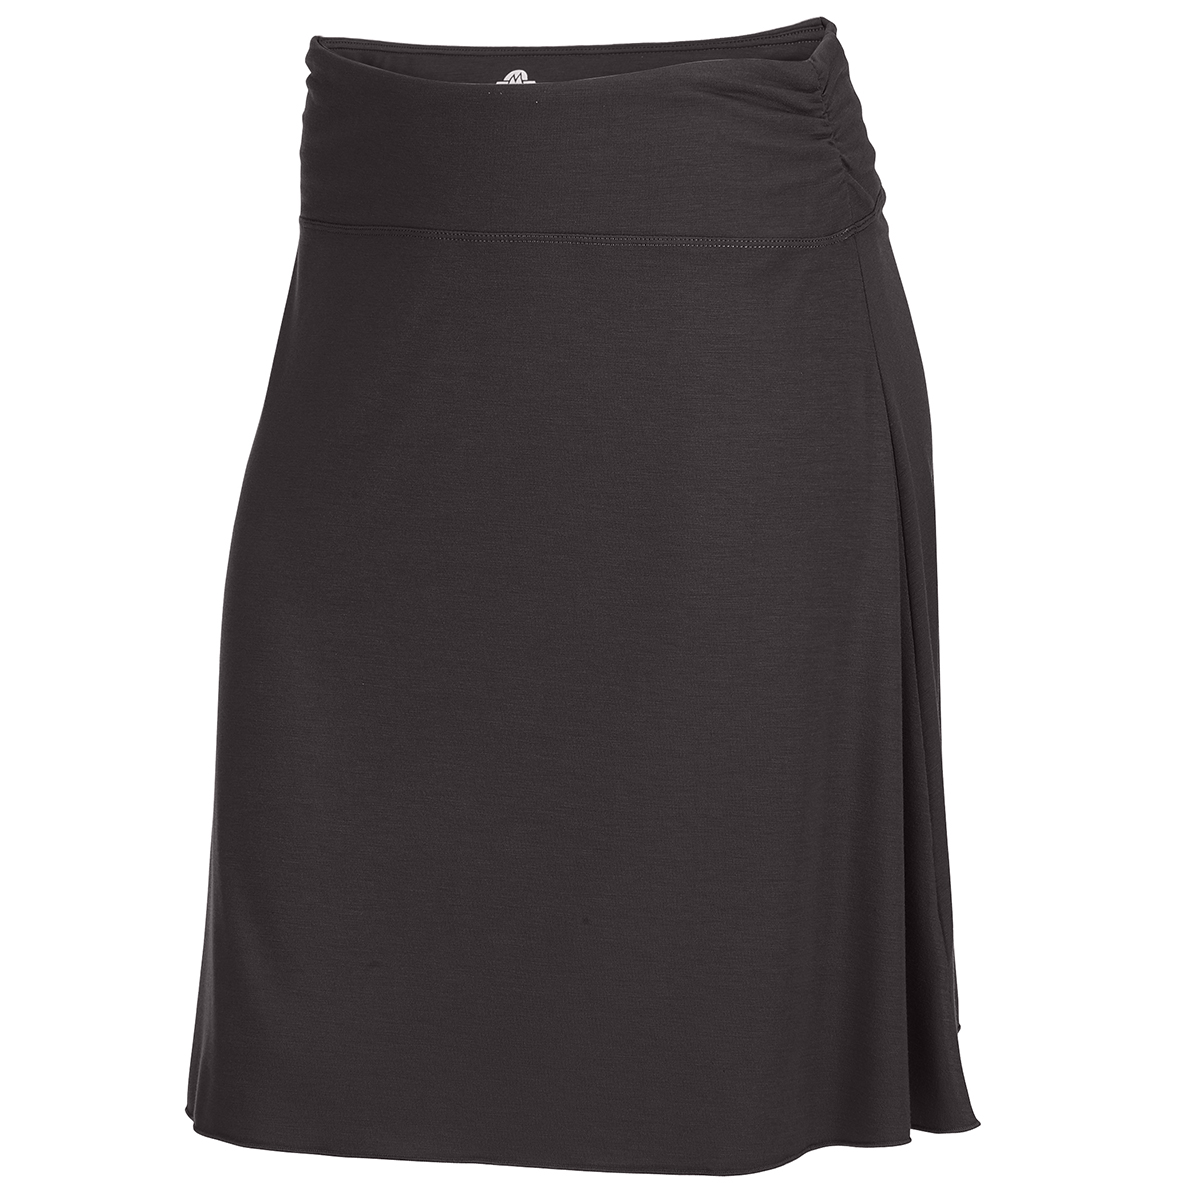 Ems Women's Highland Skirt - Brown, XS